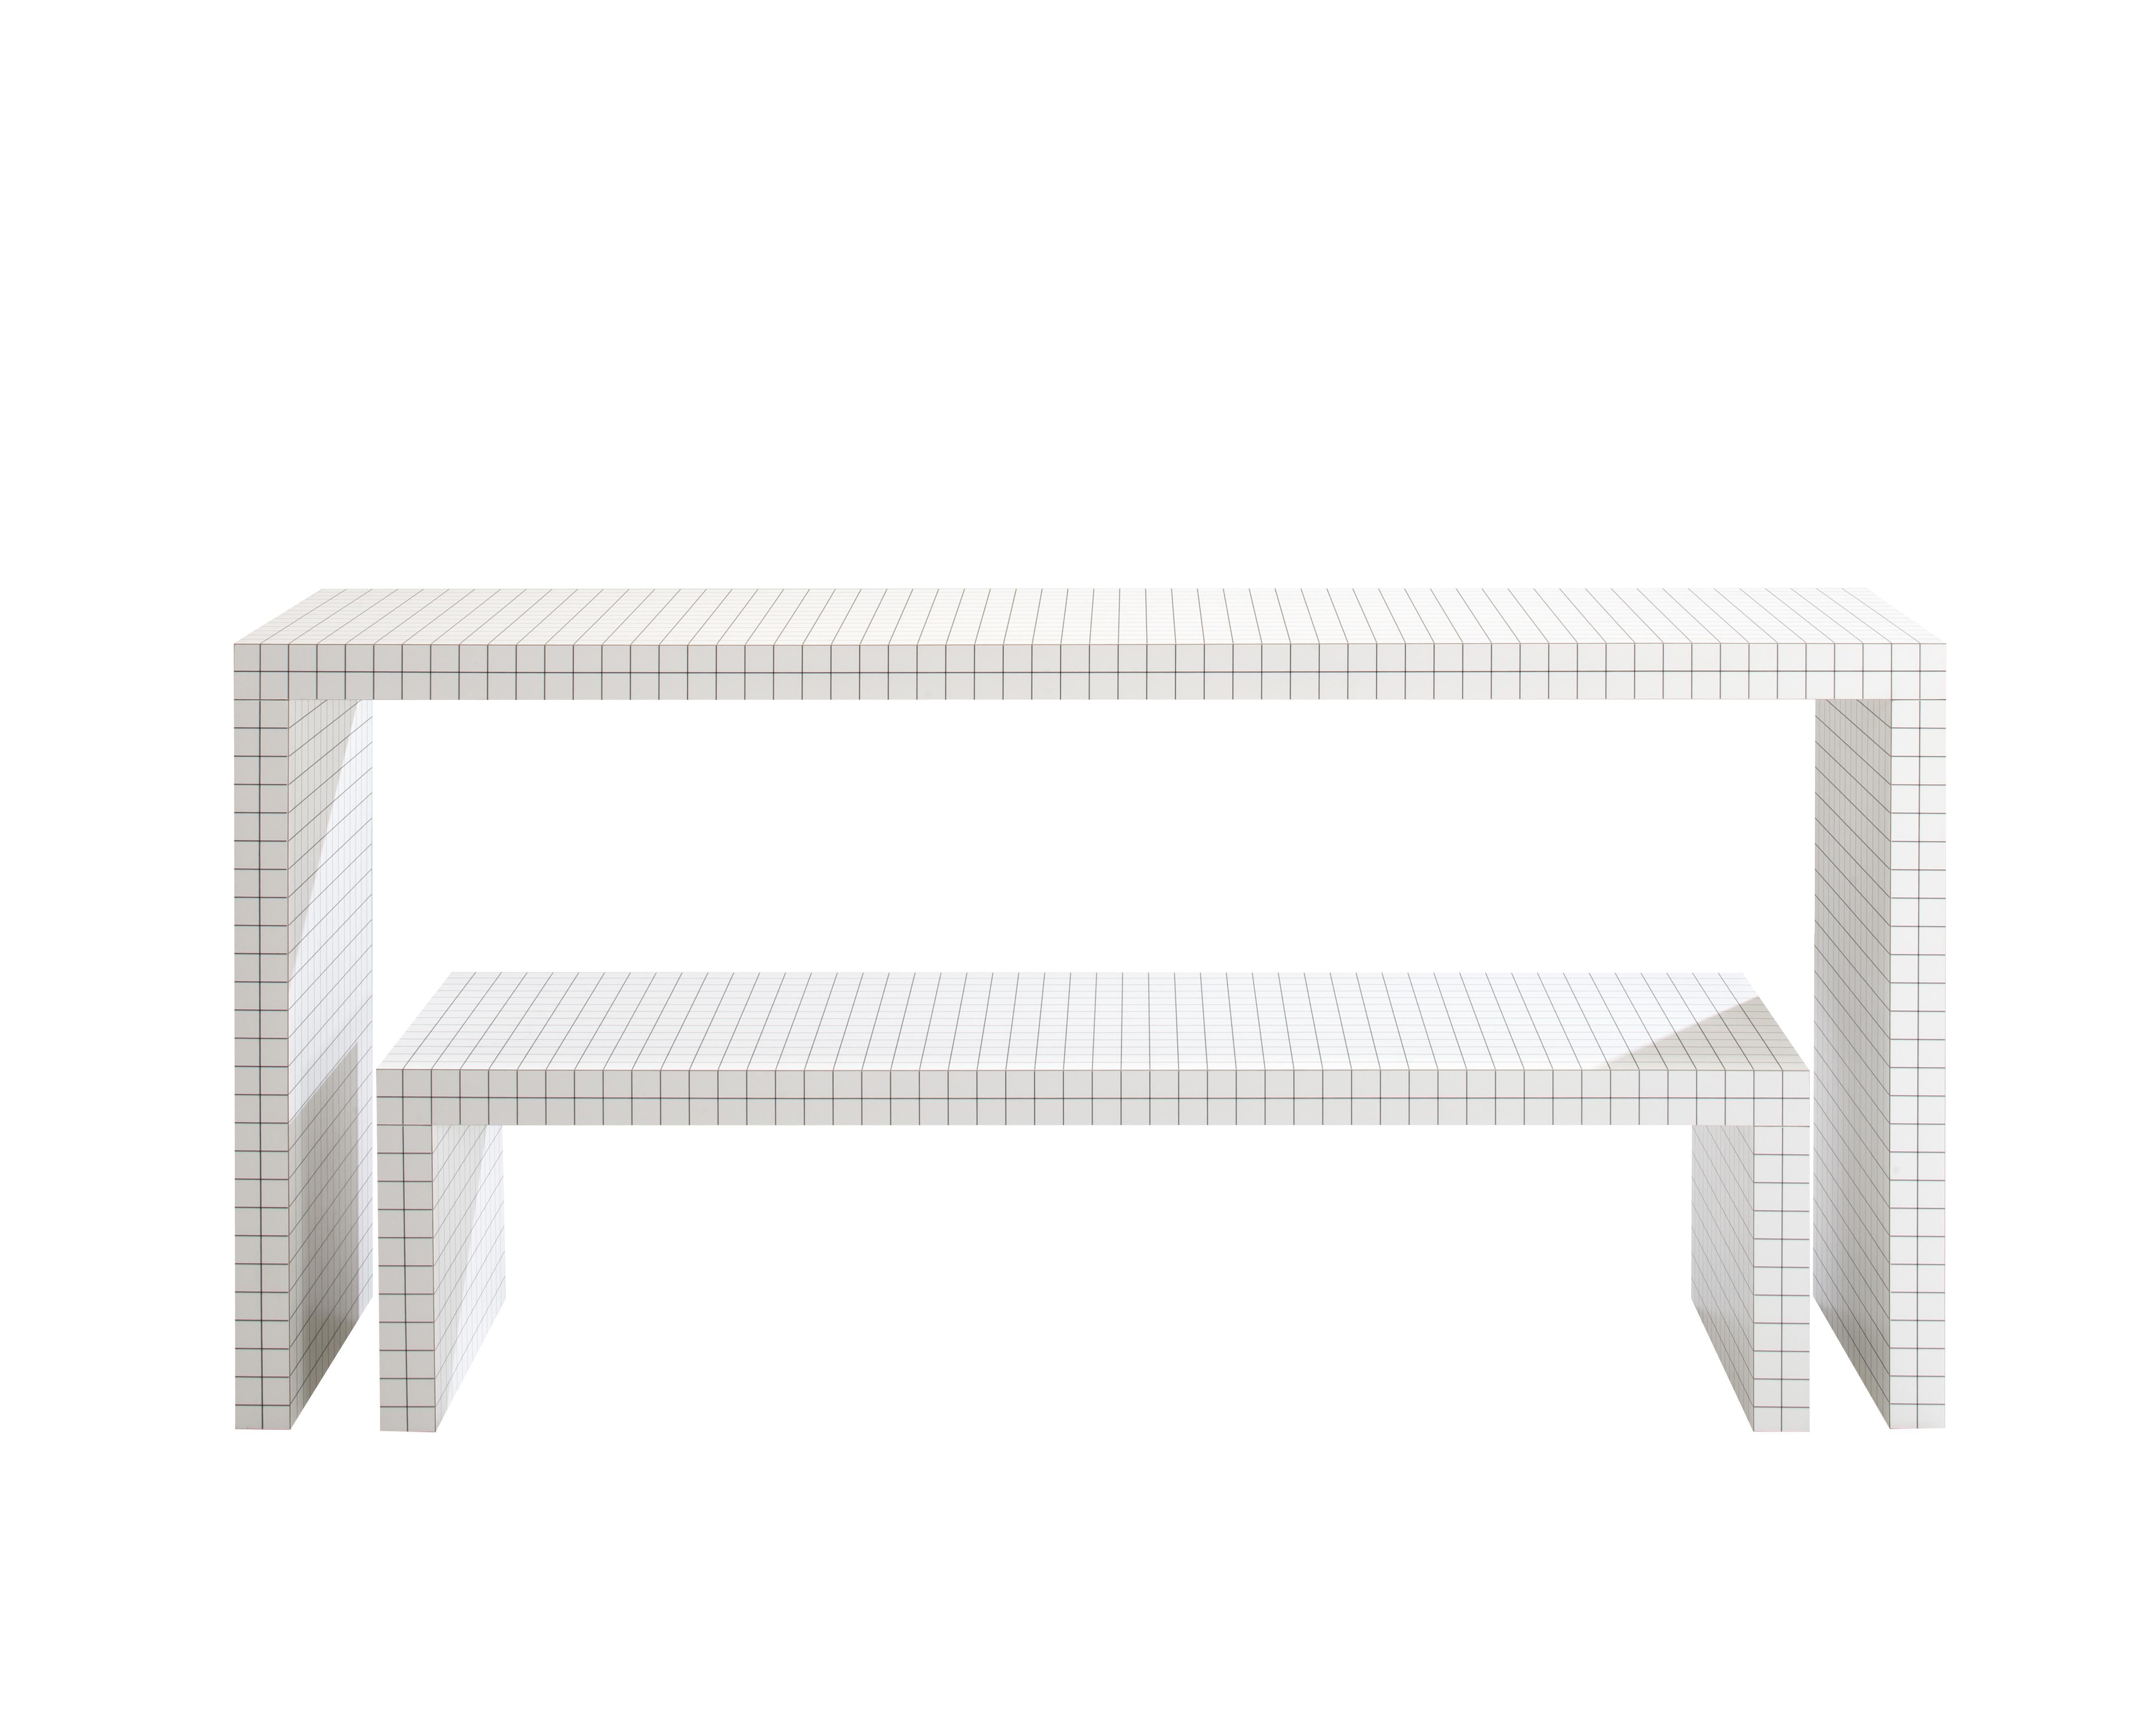 Zanotta Quaderna 710 Console Table in White Plastic Laminate by Superstudio For Sale 5